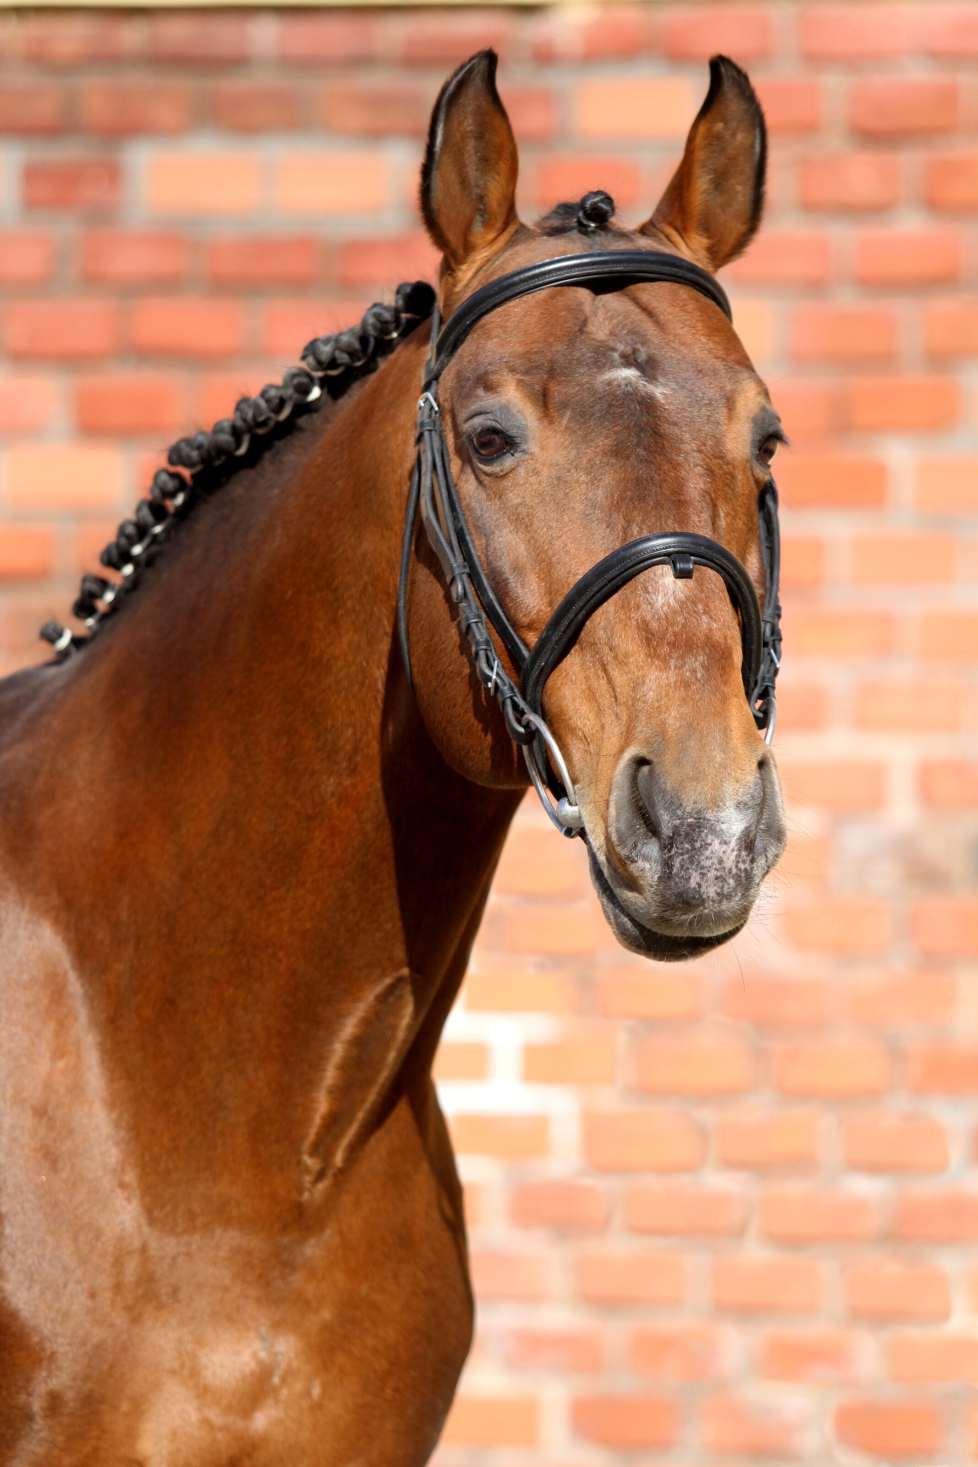 QUICK LAURO Z je synem producenta skokových koní par excellence QUICK STAR, získávajícího stále větší přízeň chovatelů.